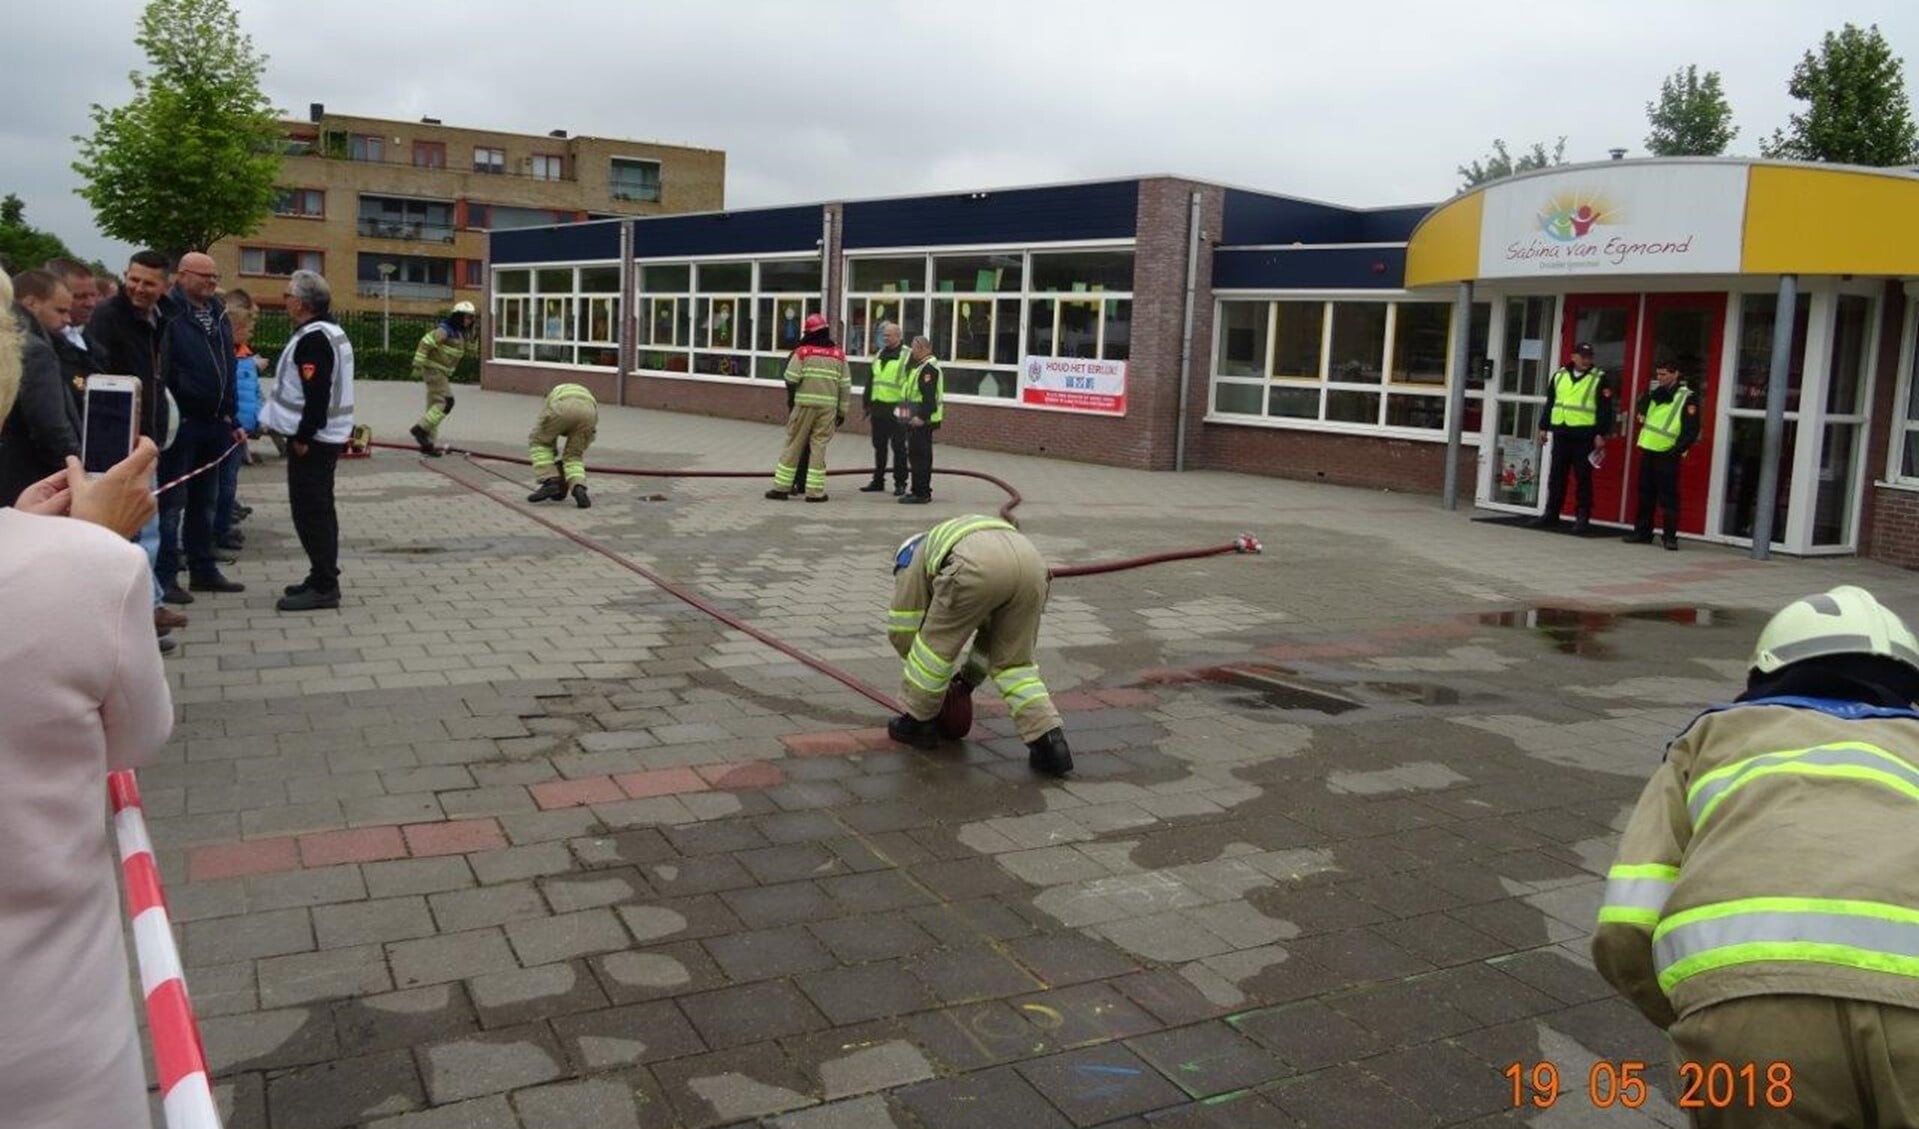 De gesimuleerde brand was bij een school.